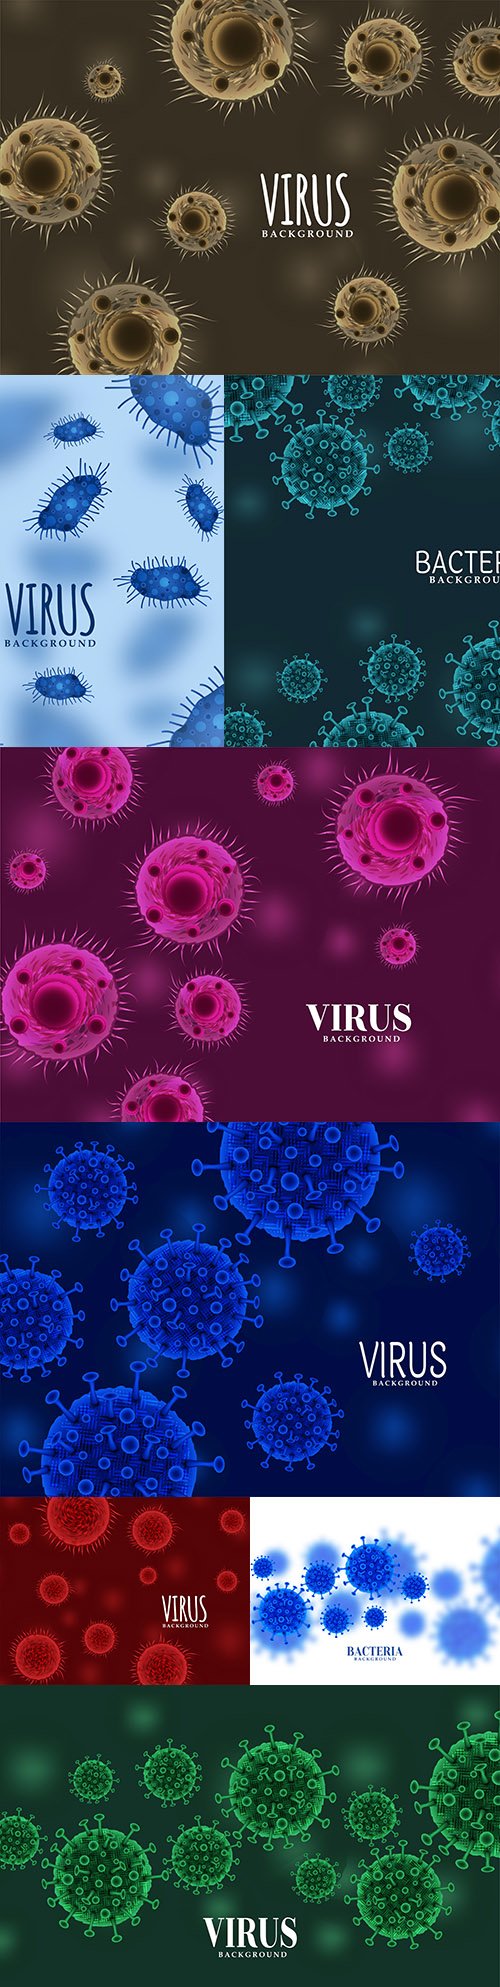 Virus and bacteria coronavirus 3d background